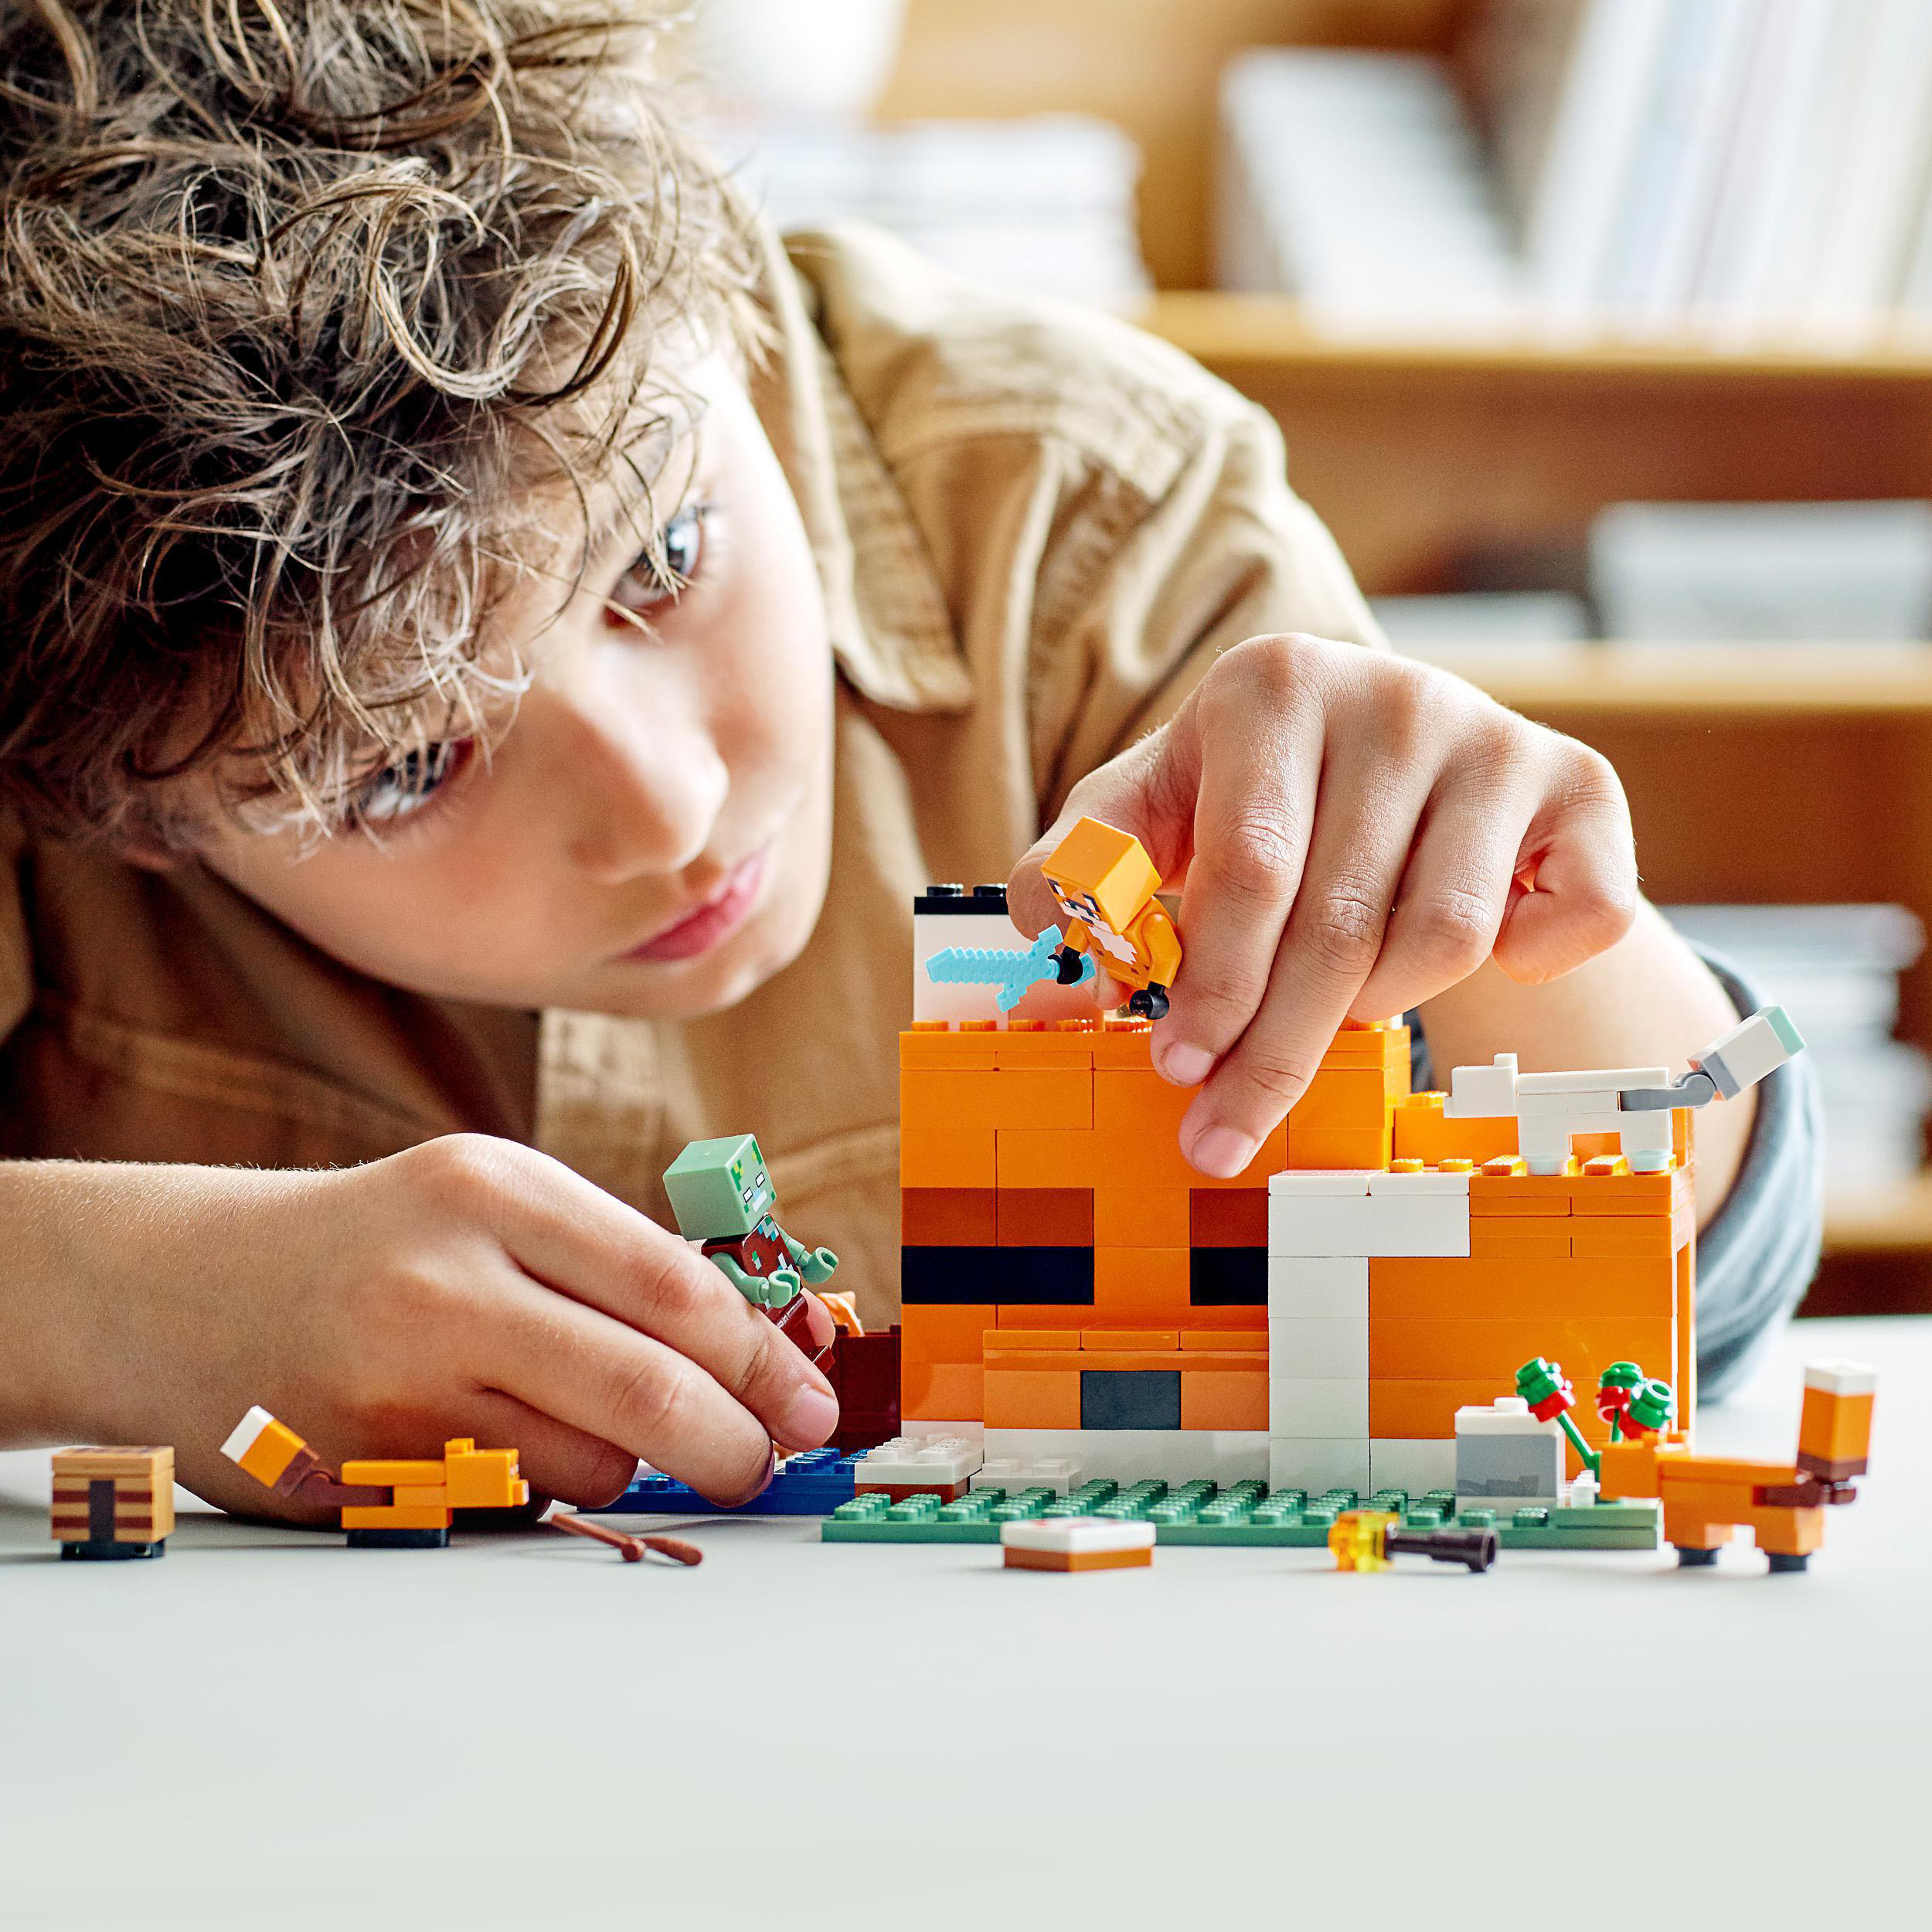 21178 Minecraft Mehrfarbig Fuchs-Lodge LEGO Die Bausatz,